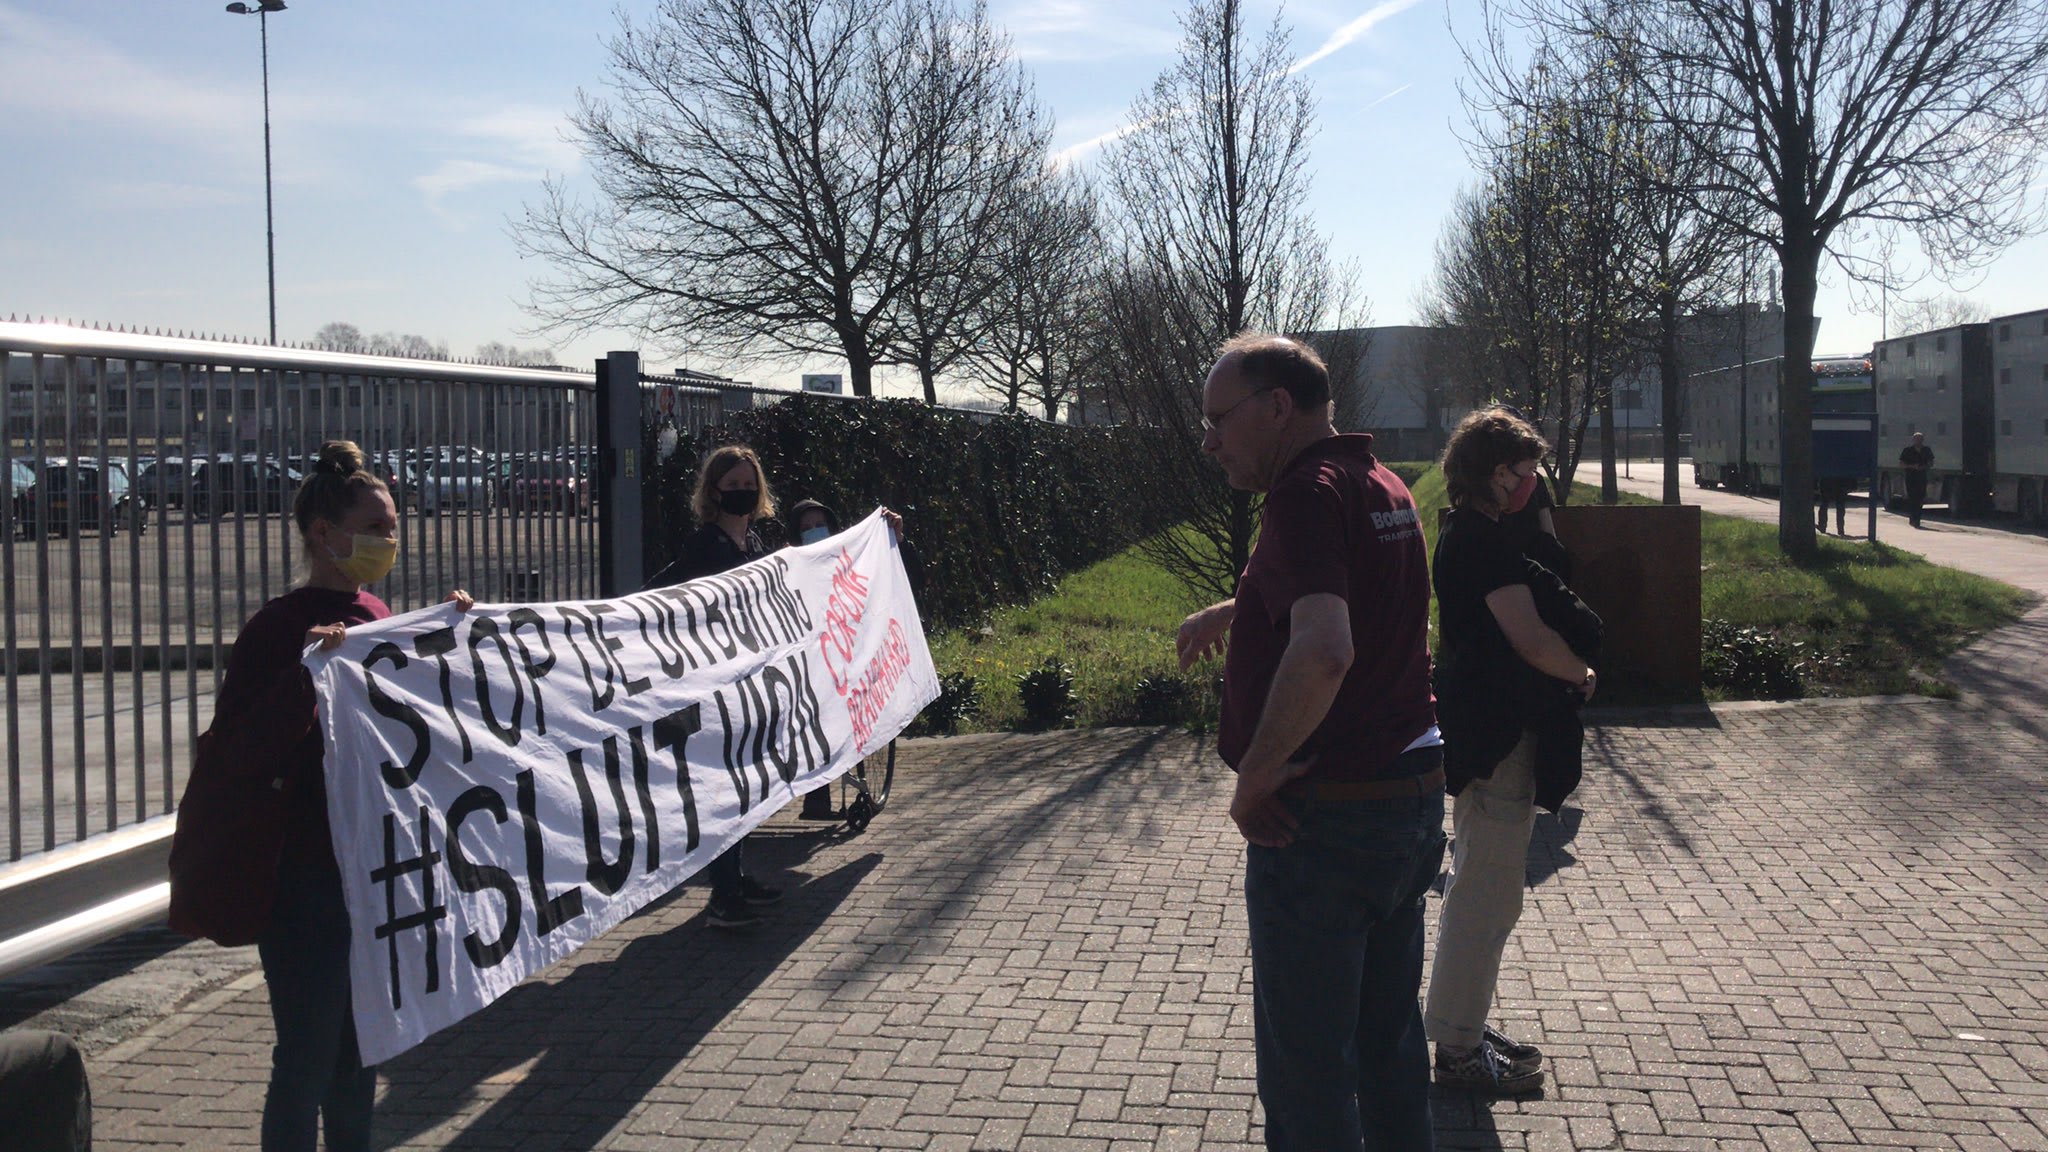 Activisten blokkeren toegang tot Vion-slachthuis in Boxtel: vier mensen aangehouden